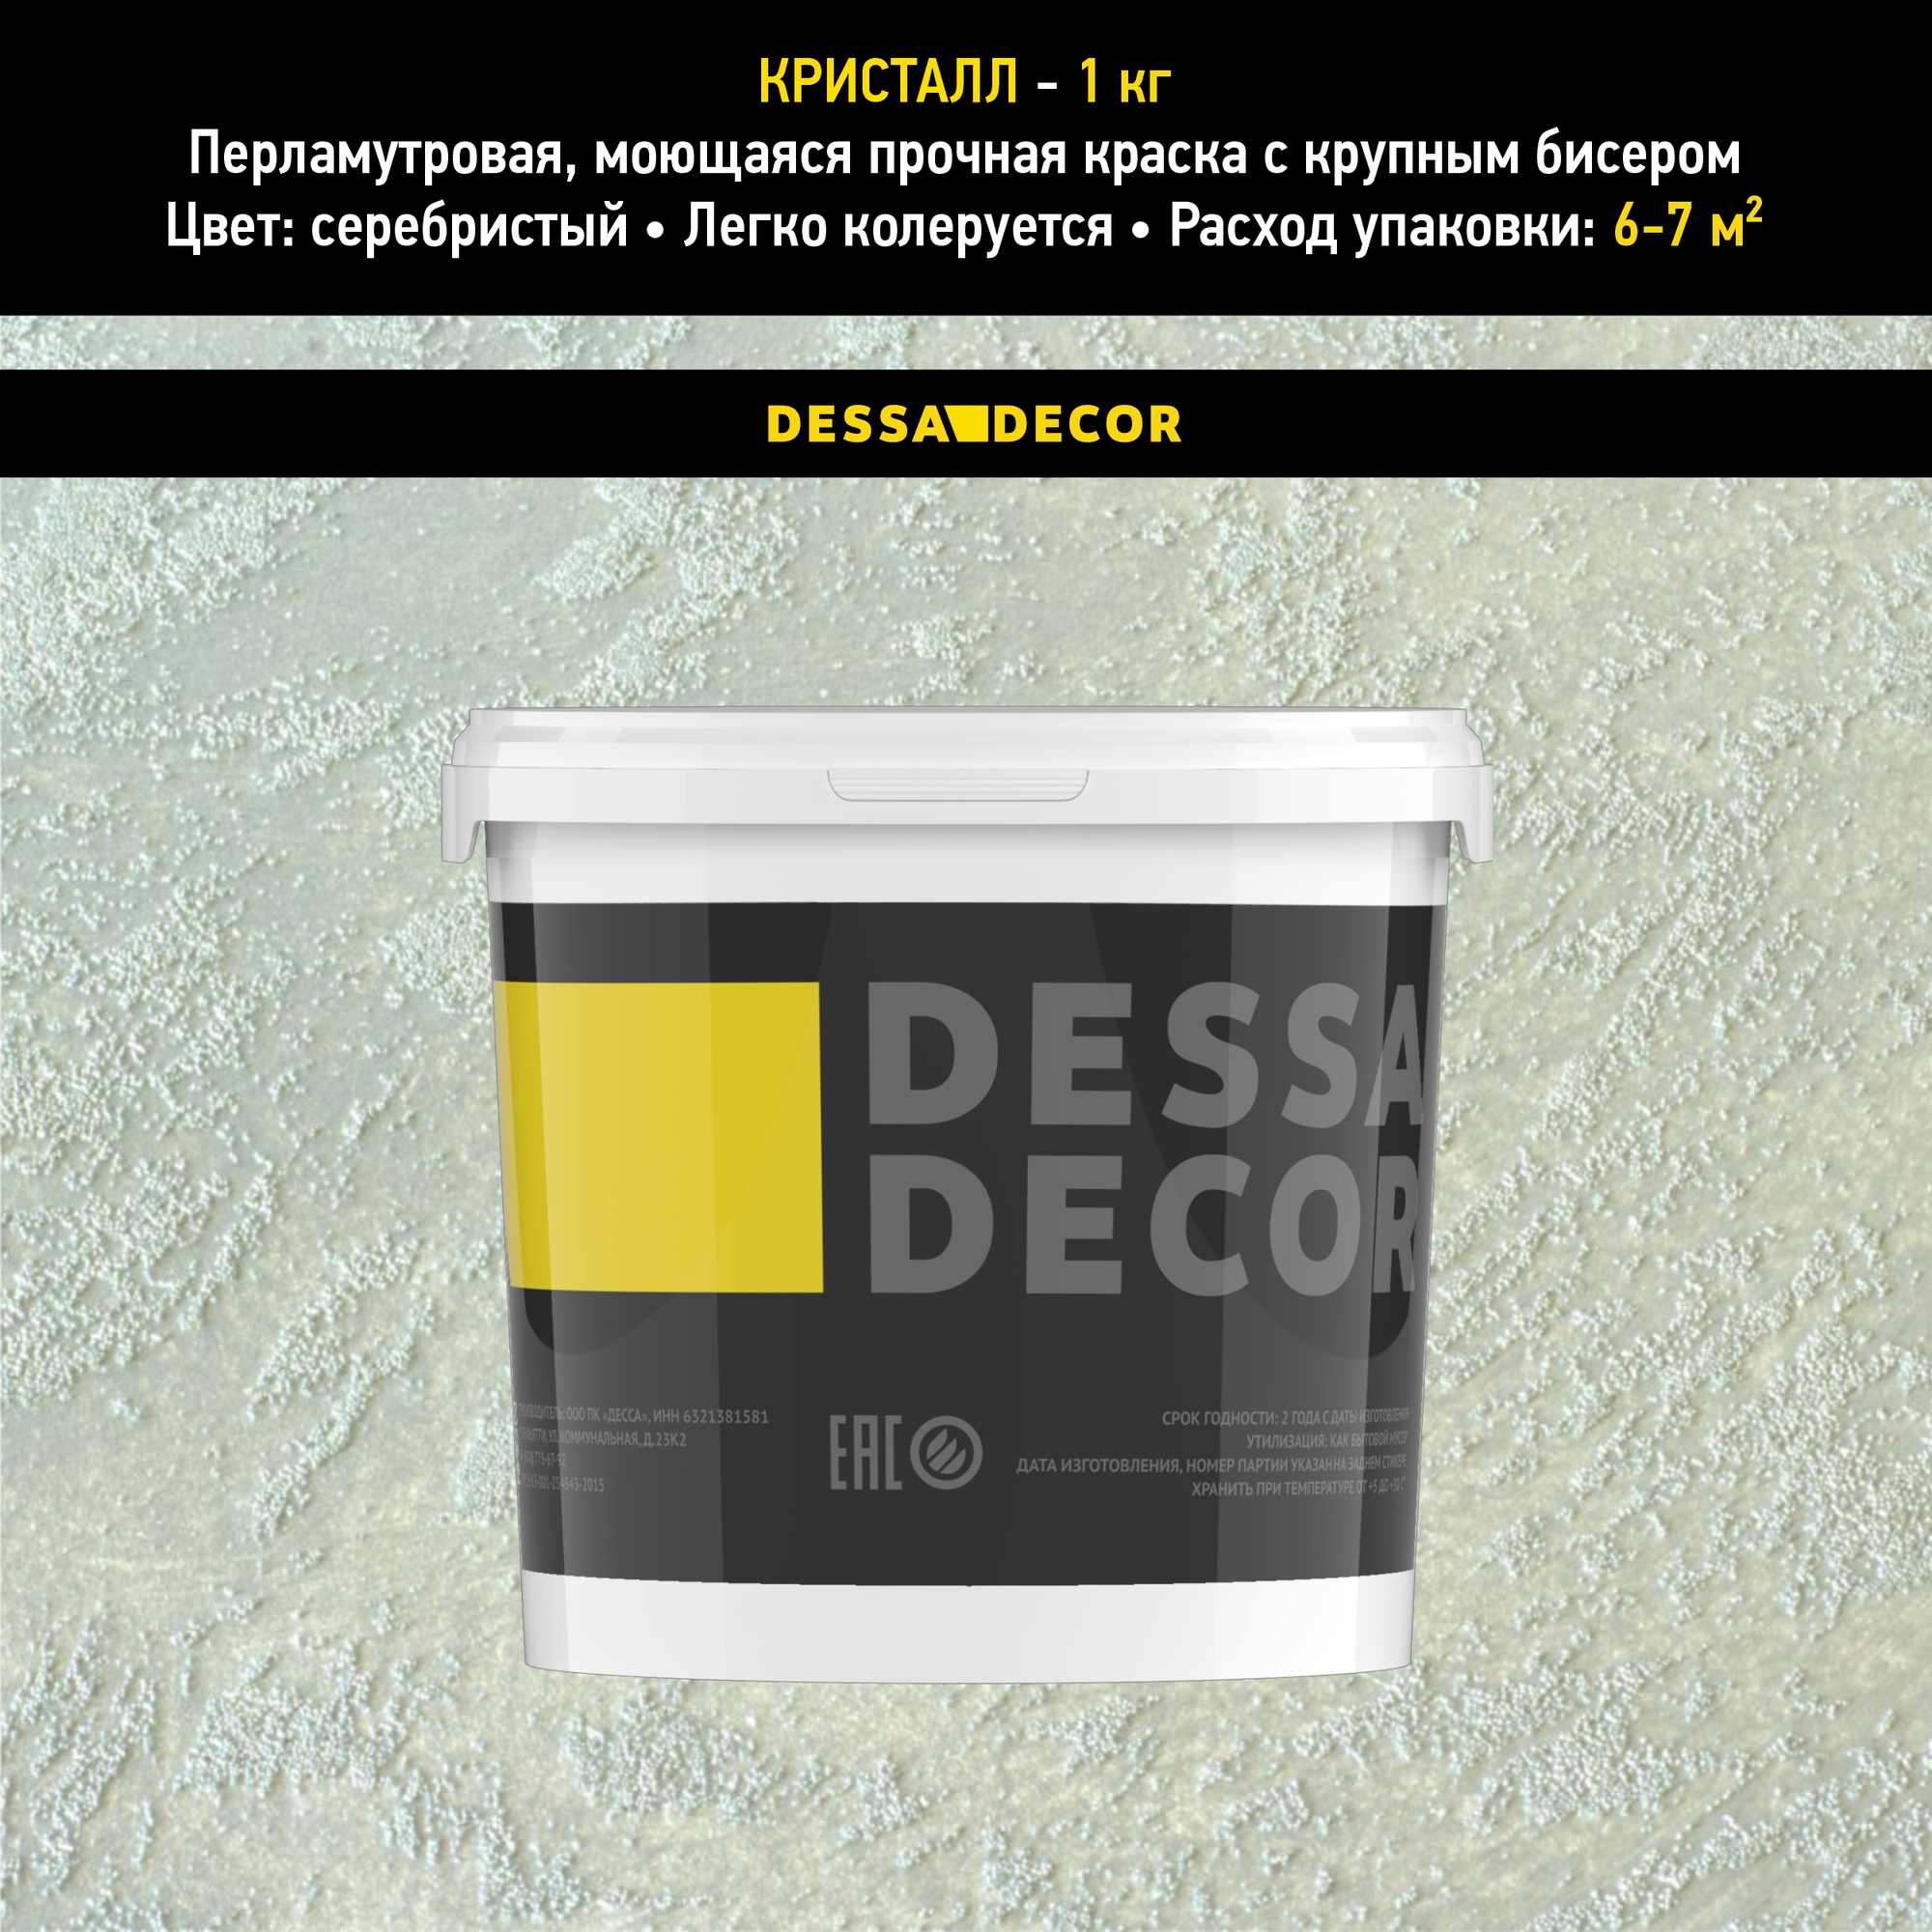 Декоративная краска для стен DESSA DECOR Кристалл 1 кг, перламутровая декоративная штукатурка для стен для имитации песчаной поверхности с крупным бисером